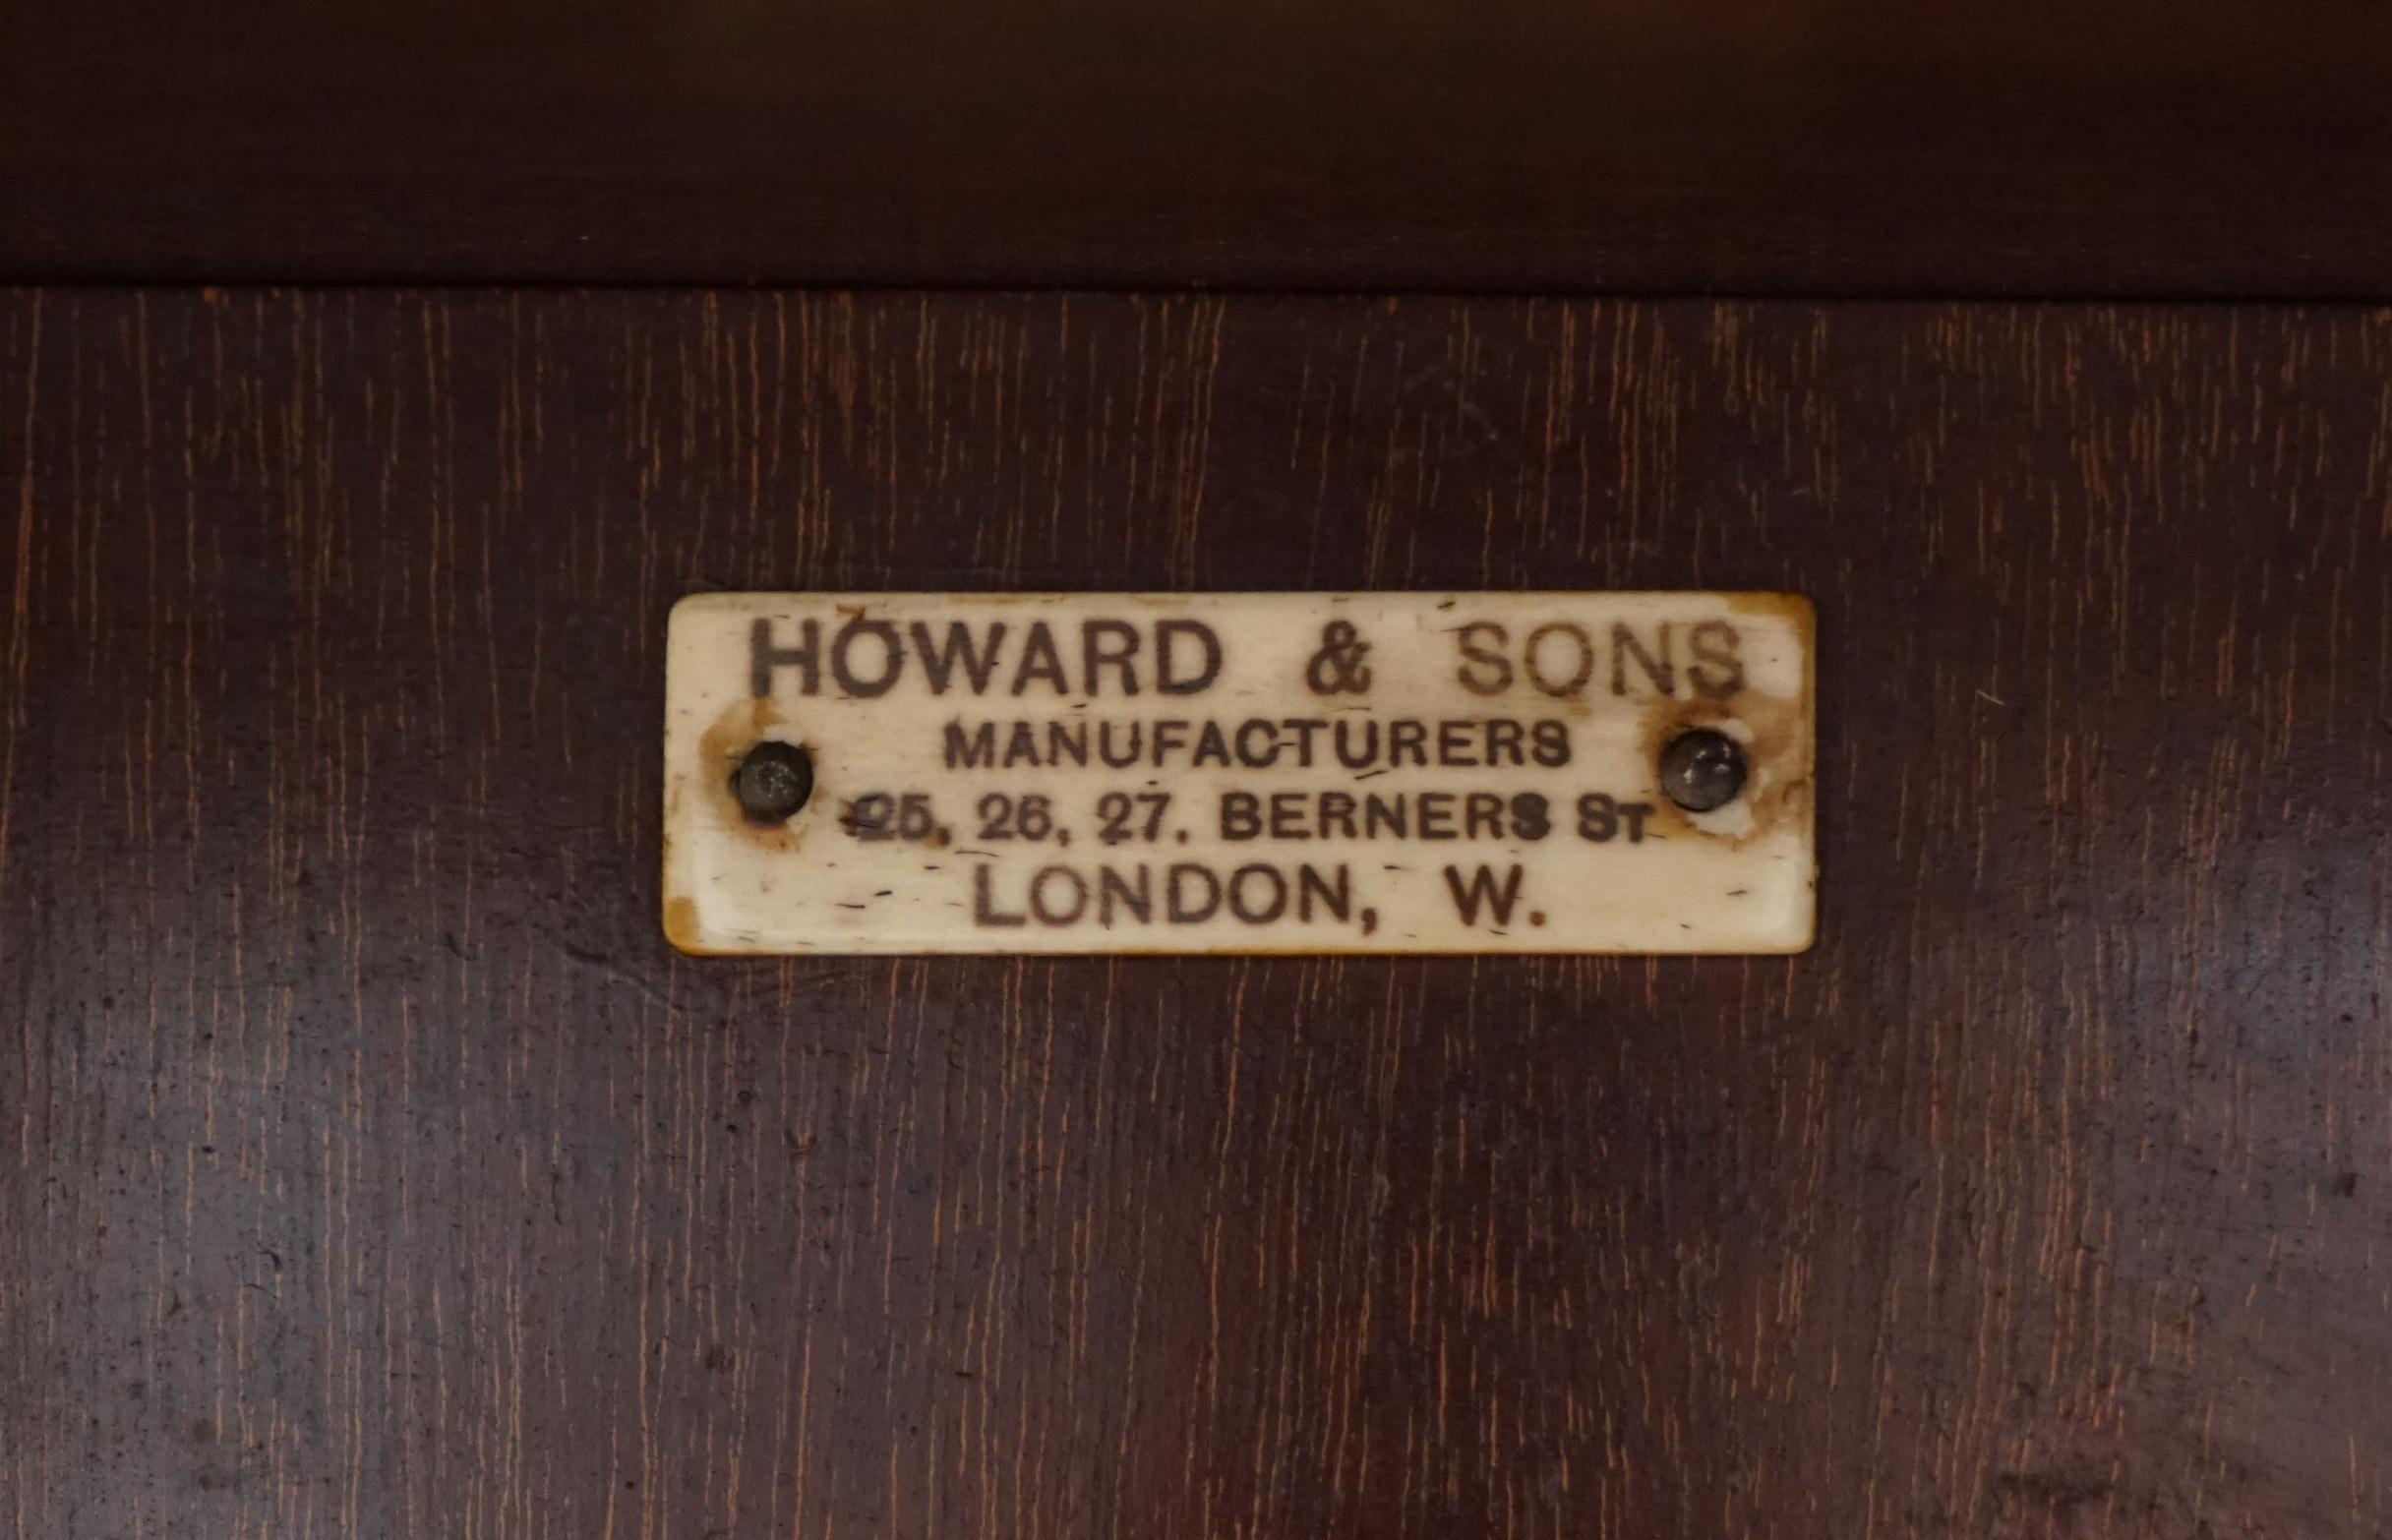 Wir freuen uns, diesen wirklich sehr schönen und sehr sammelwürdigen Howard & Son's Berner street Library revolving bookcase table zum Verkauf anbieten zu können 

Ich habe noch nie eines von Howard gesehen, es ist mittelviktorianisch, um 1870,